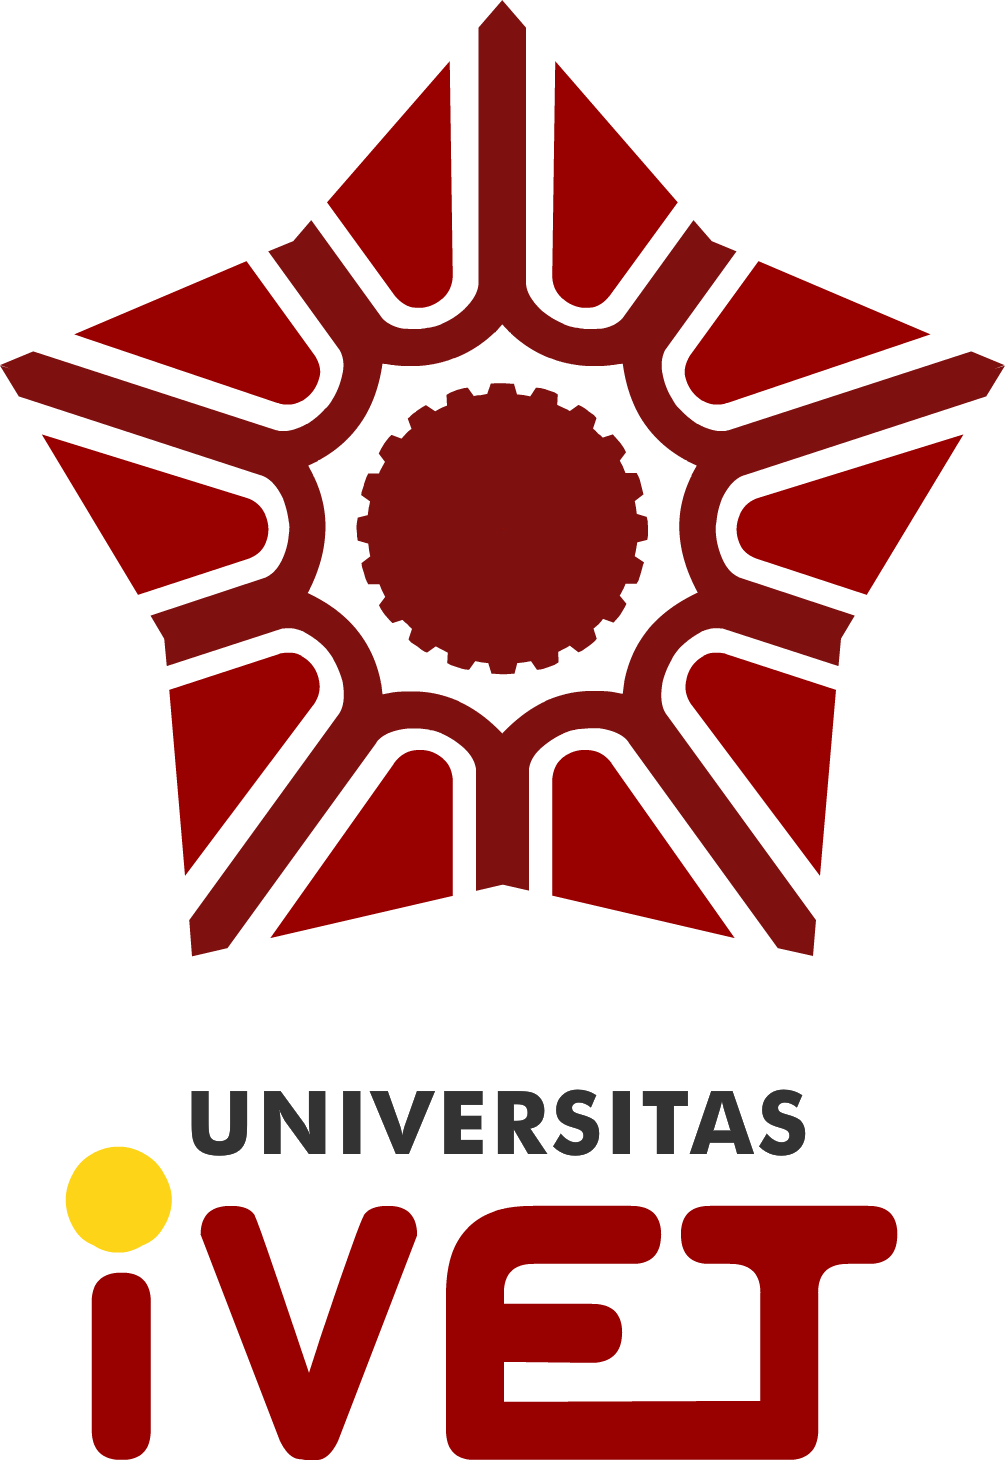 logo Universitas Ivet 